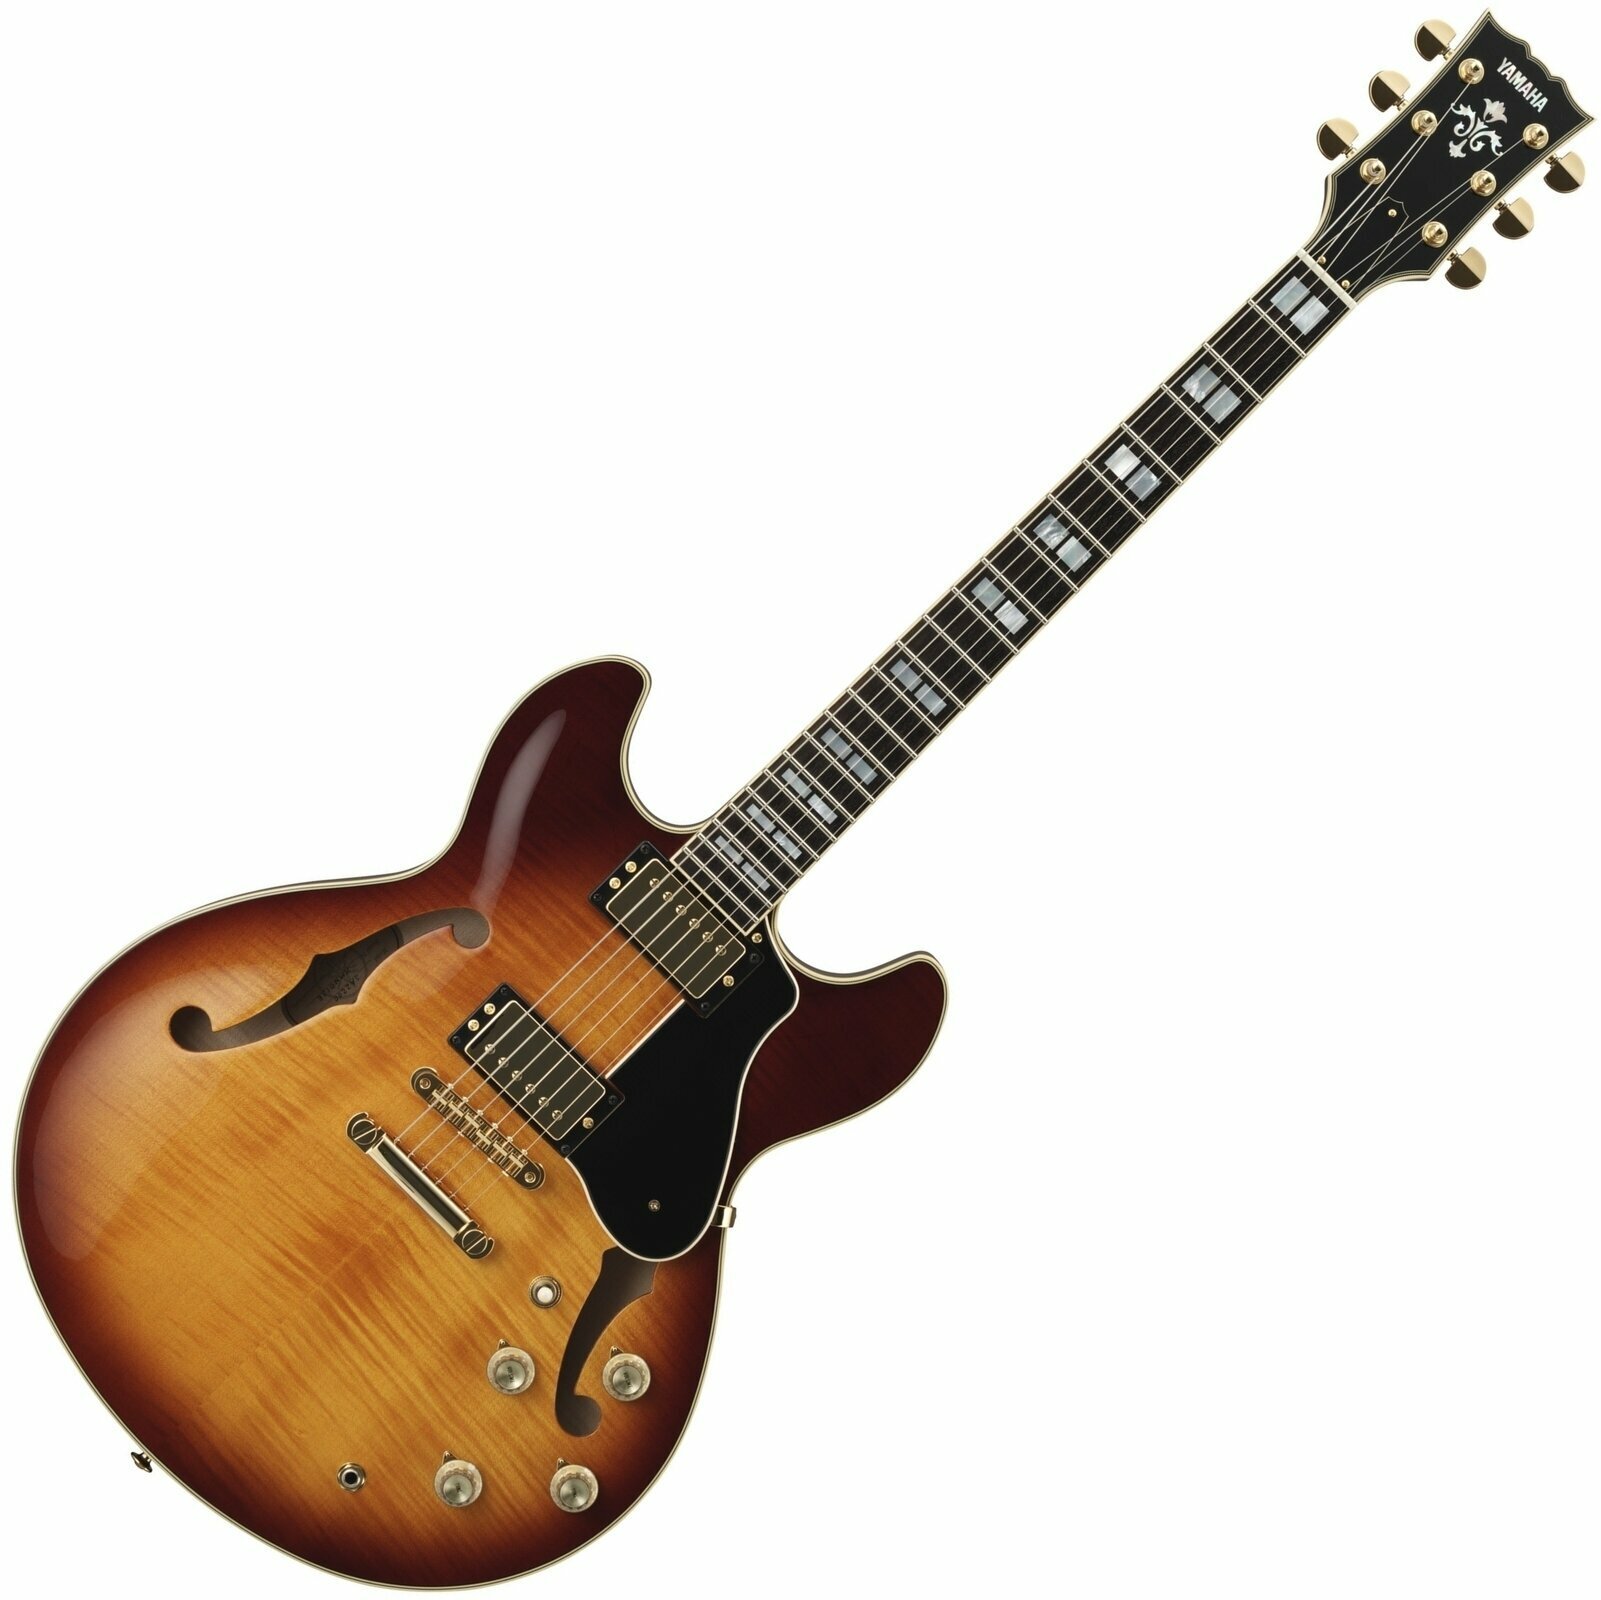 Semiakustická gitara Yamaha SA 2200 VS WC Violin Sunburst